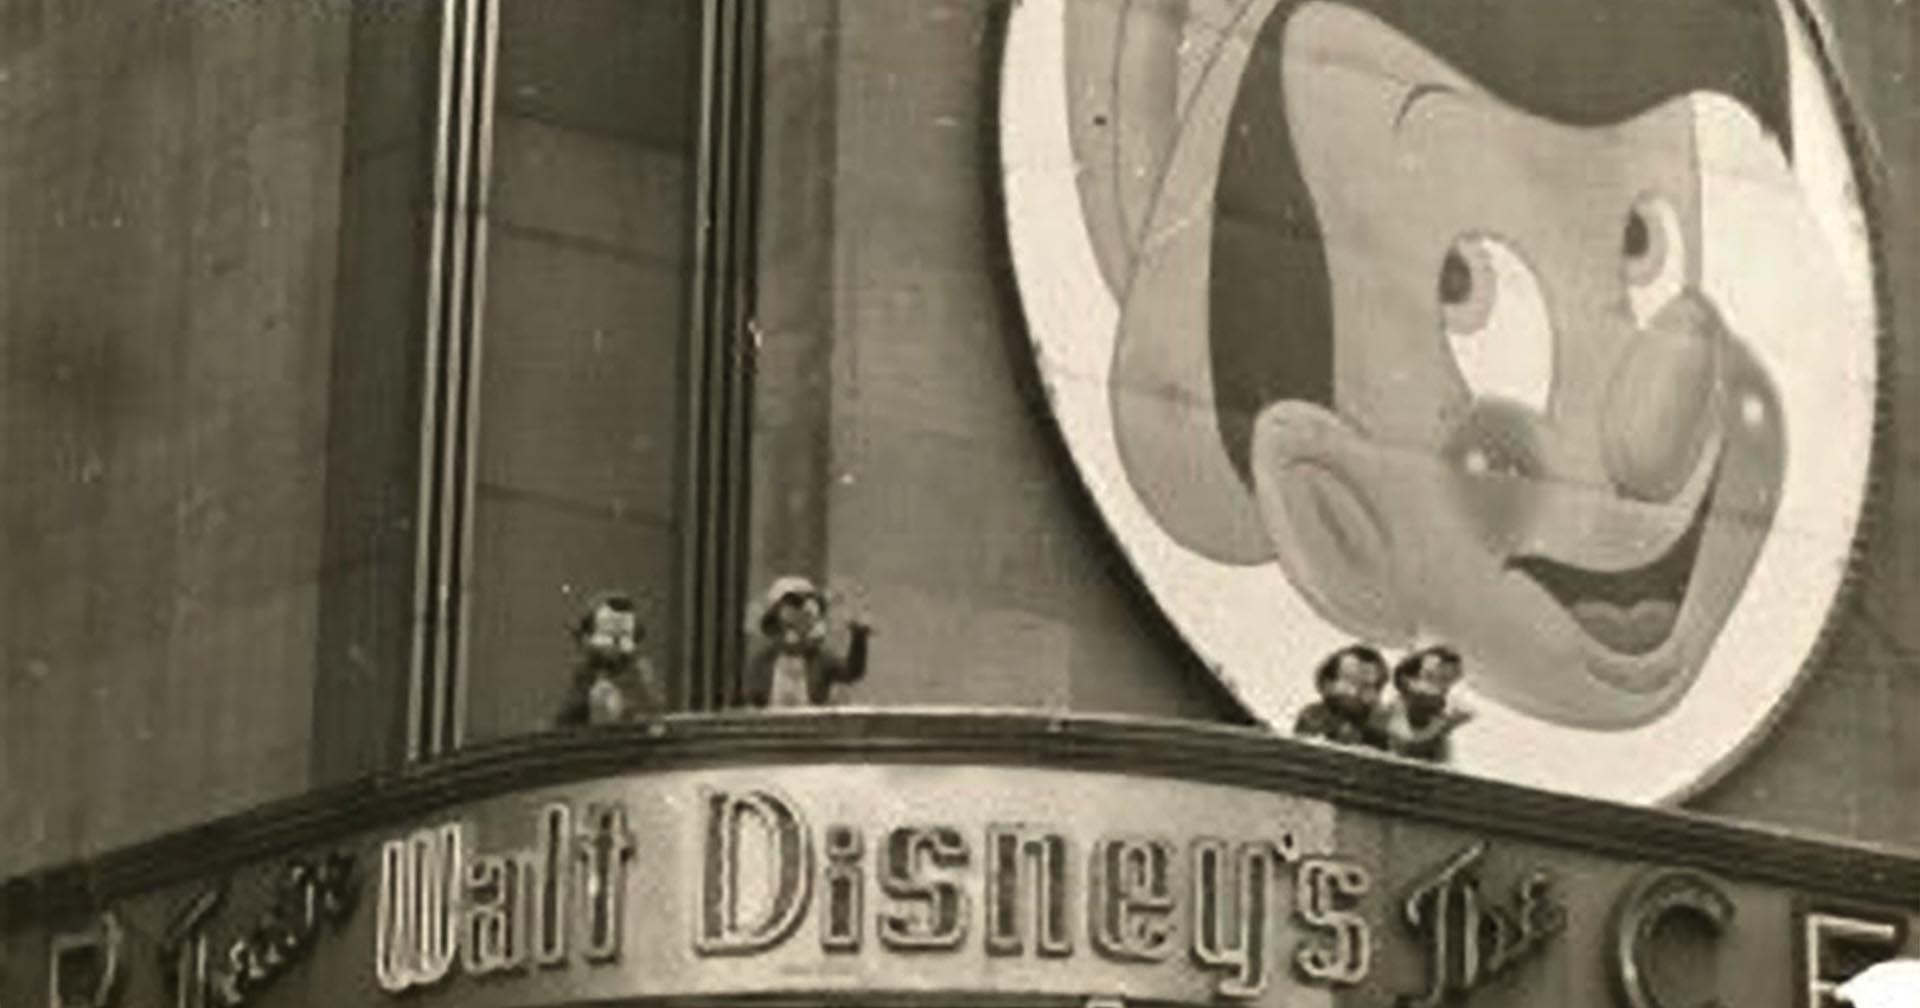 ความอับอายในอดีตของ Disney จ้าง 11 คนแคระมาแต่งเป็น Pinocchio แต่พวกเขาเมา ล่อนจ้อน ทะเลาะตบตีกันเอง